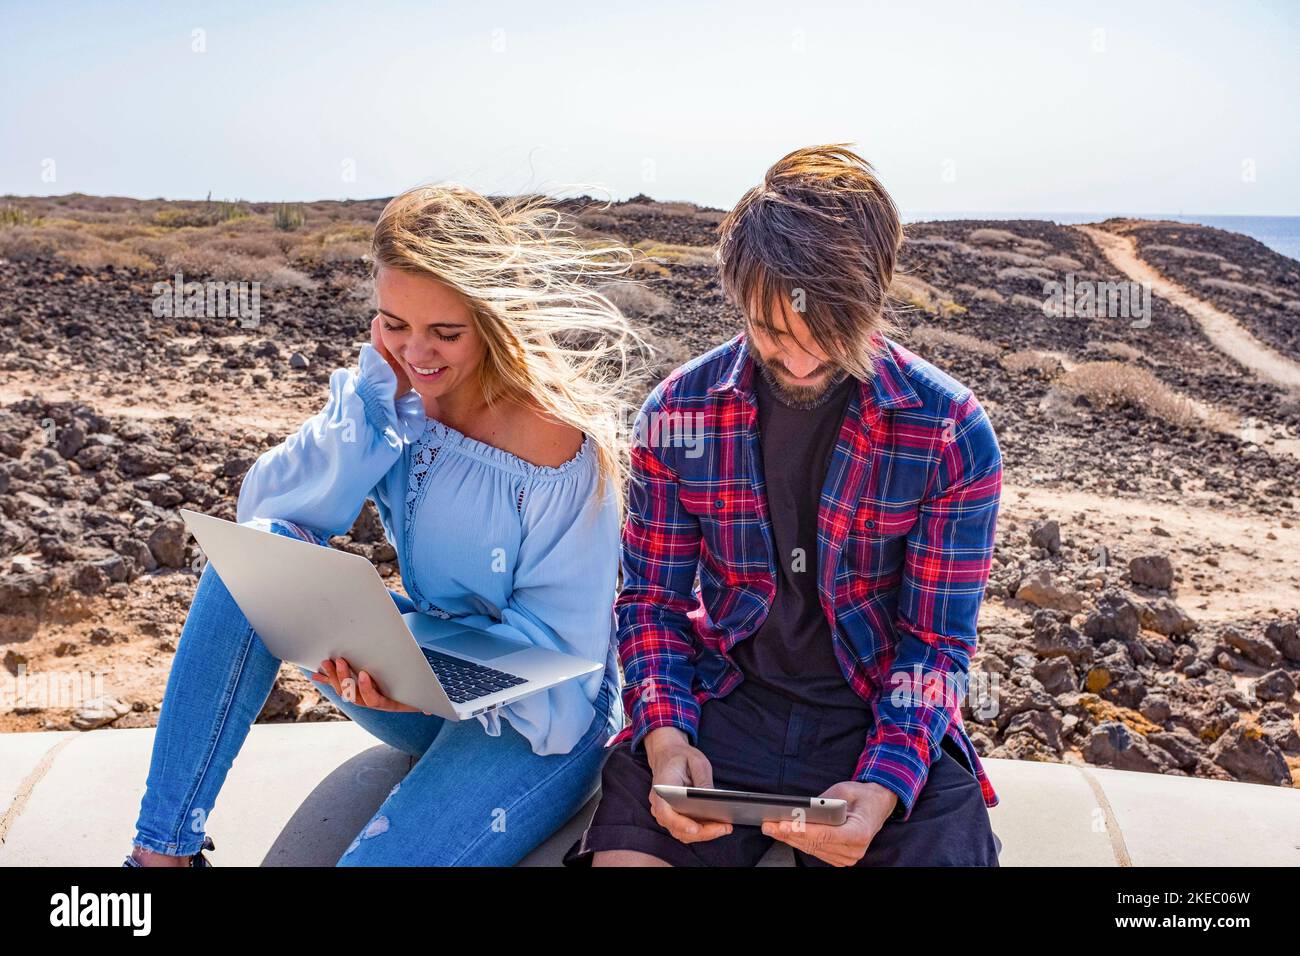 Ein paar von zwei Erwachsenen, die zusammen im Freien Laptop und ipad benutzen - Technologie-Konzept und Online-Lifestyle - schöne Frau und Schöner Mann, der Spaß zusammen hat Stockfoto